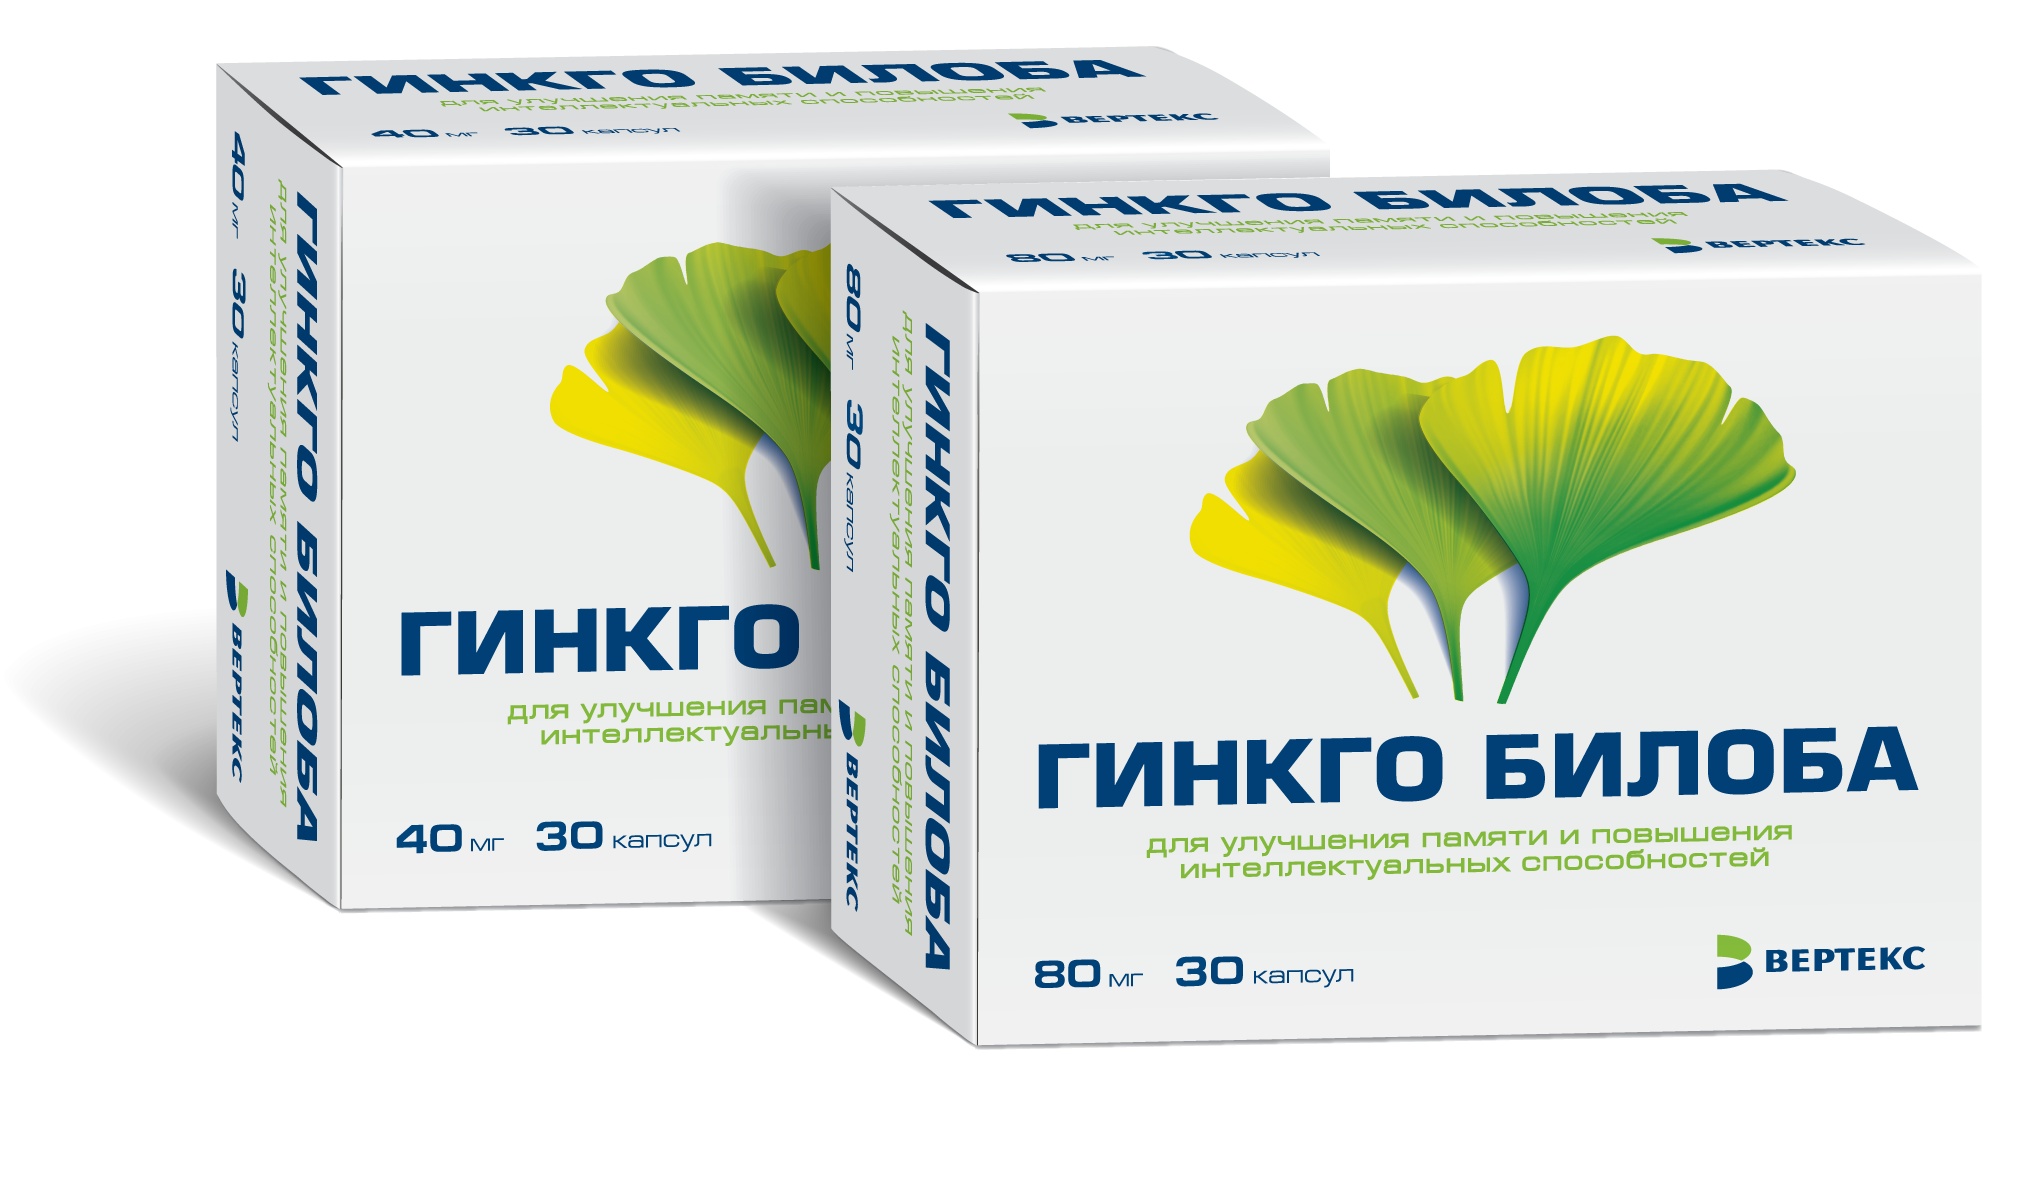 Гинкго билоба купить в аптеке. Препараты с гинкго билоба для улучшения памяти. Гинкго билоба 40 мг. Гинкго билоба капс 40мг n30 Вертекс. Экстракт листьев гинкго билоба.